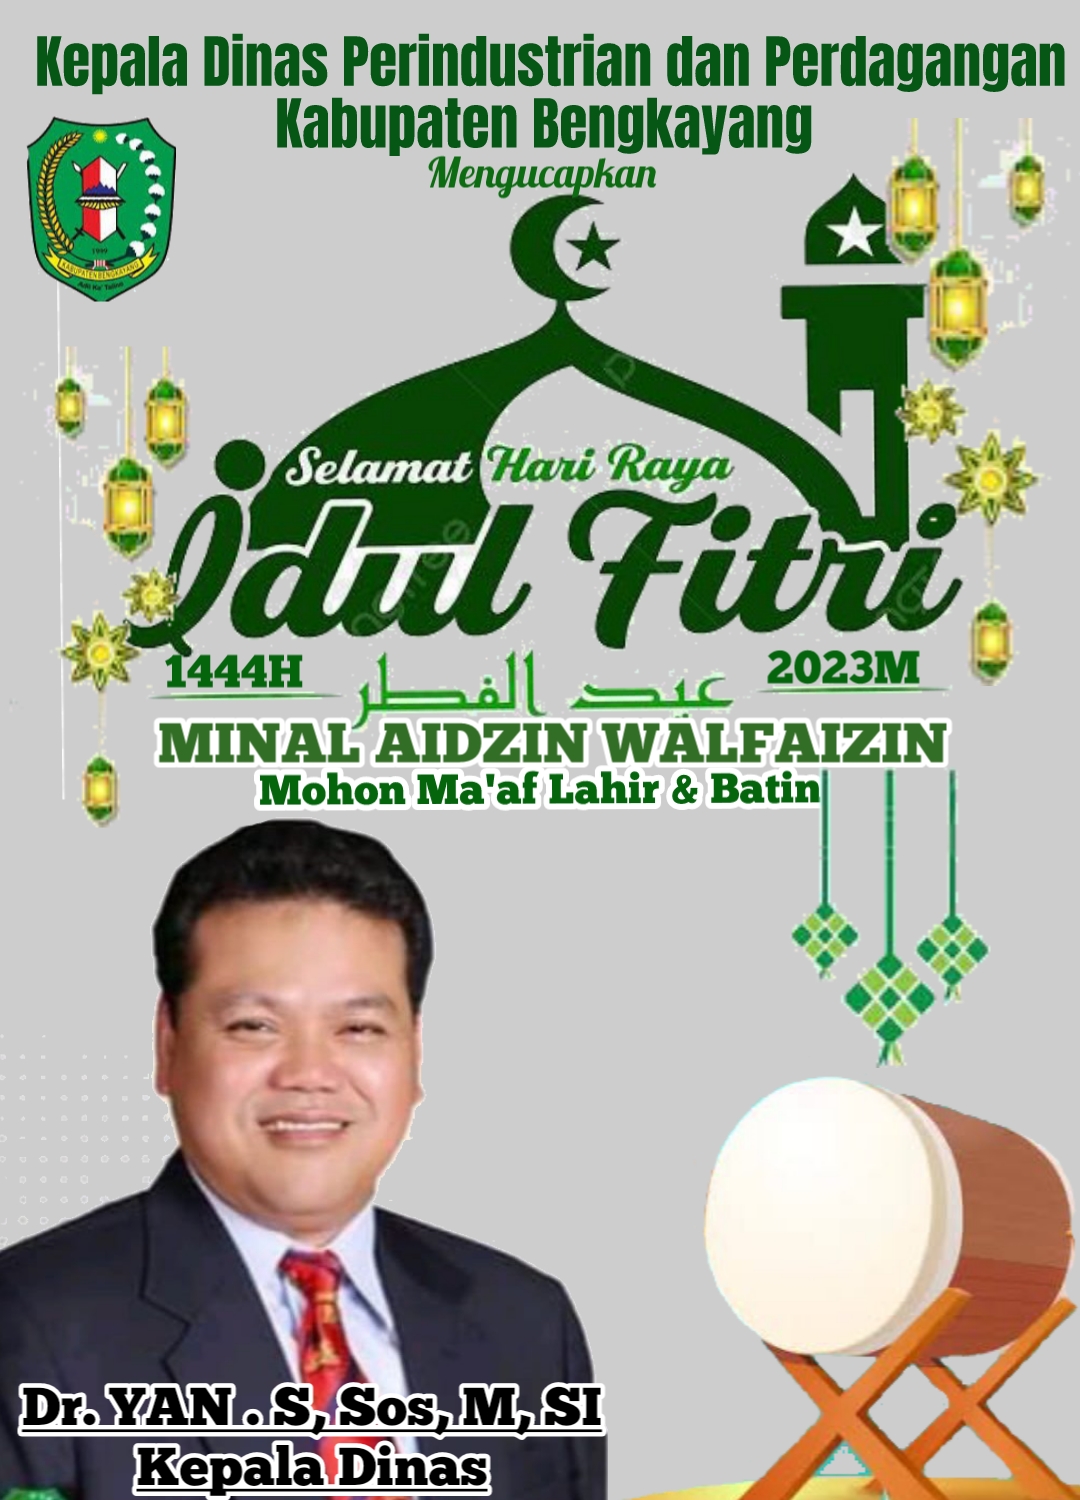 Disperindag Kabupaten Bengkayang Mengucapkan Selamat Hari Raya Idul Fitri 1444H/2023